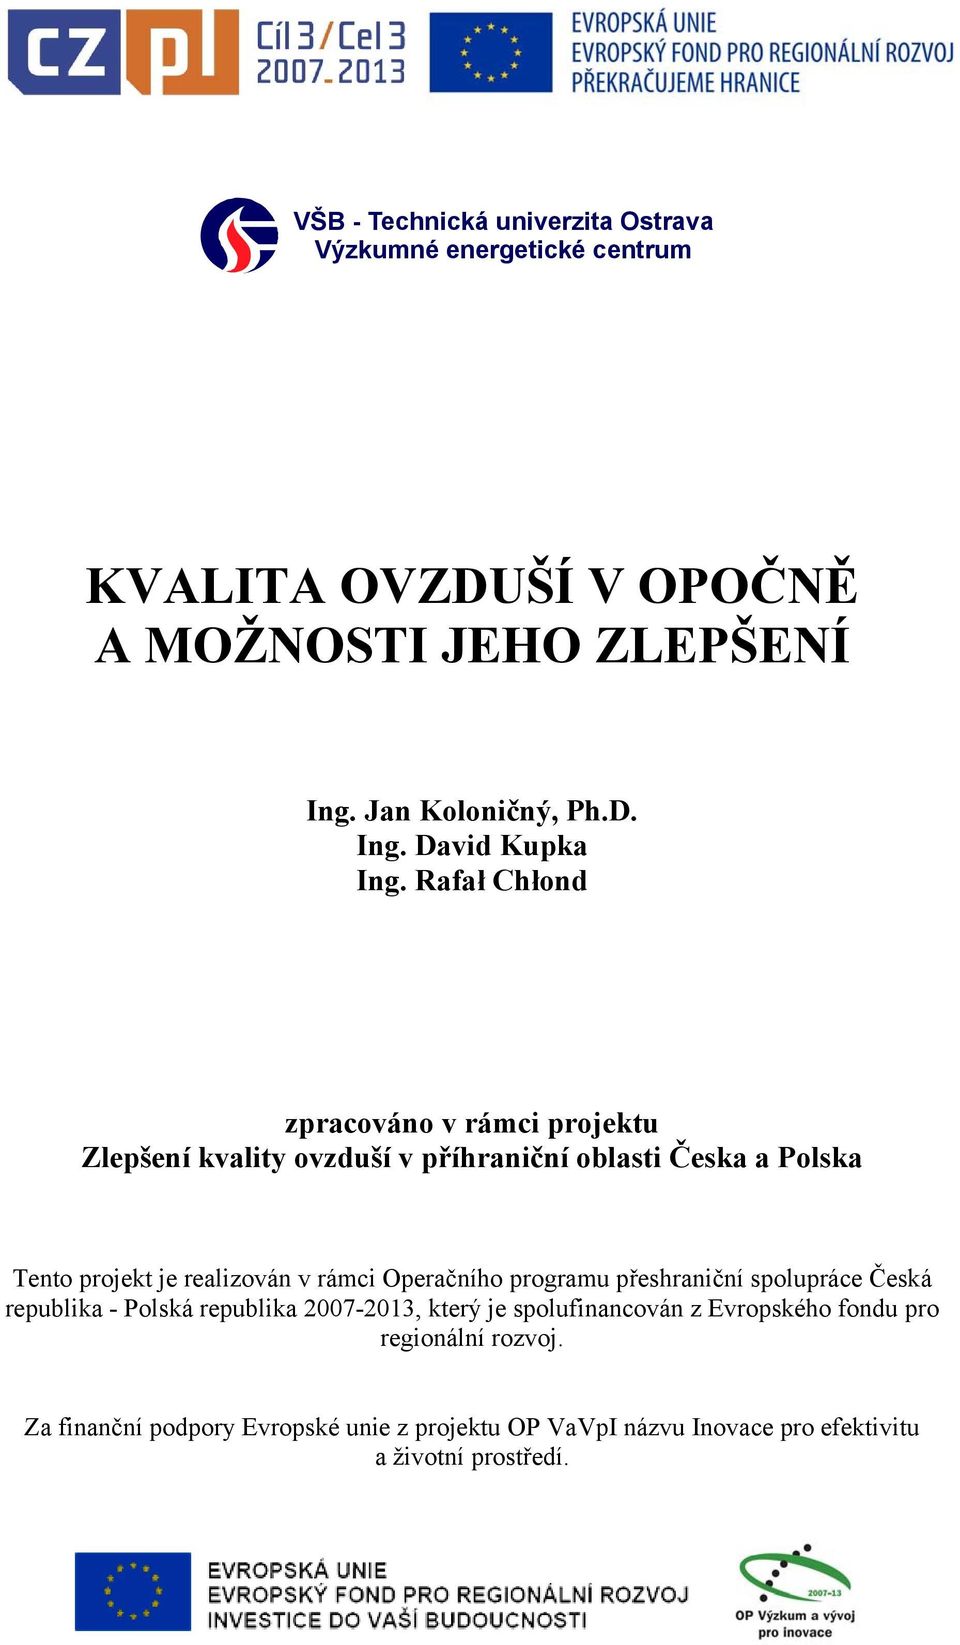 Operačního programu přeshraniční spolupráce Česká republika - Polská republika 2007-2013, který je spolufinancován z Evropského fondu pro